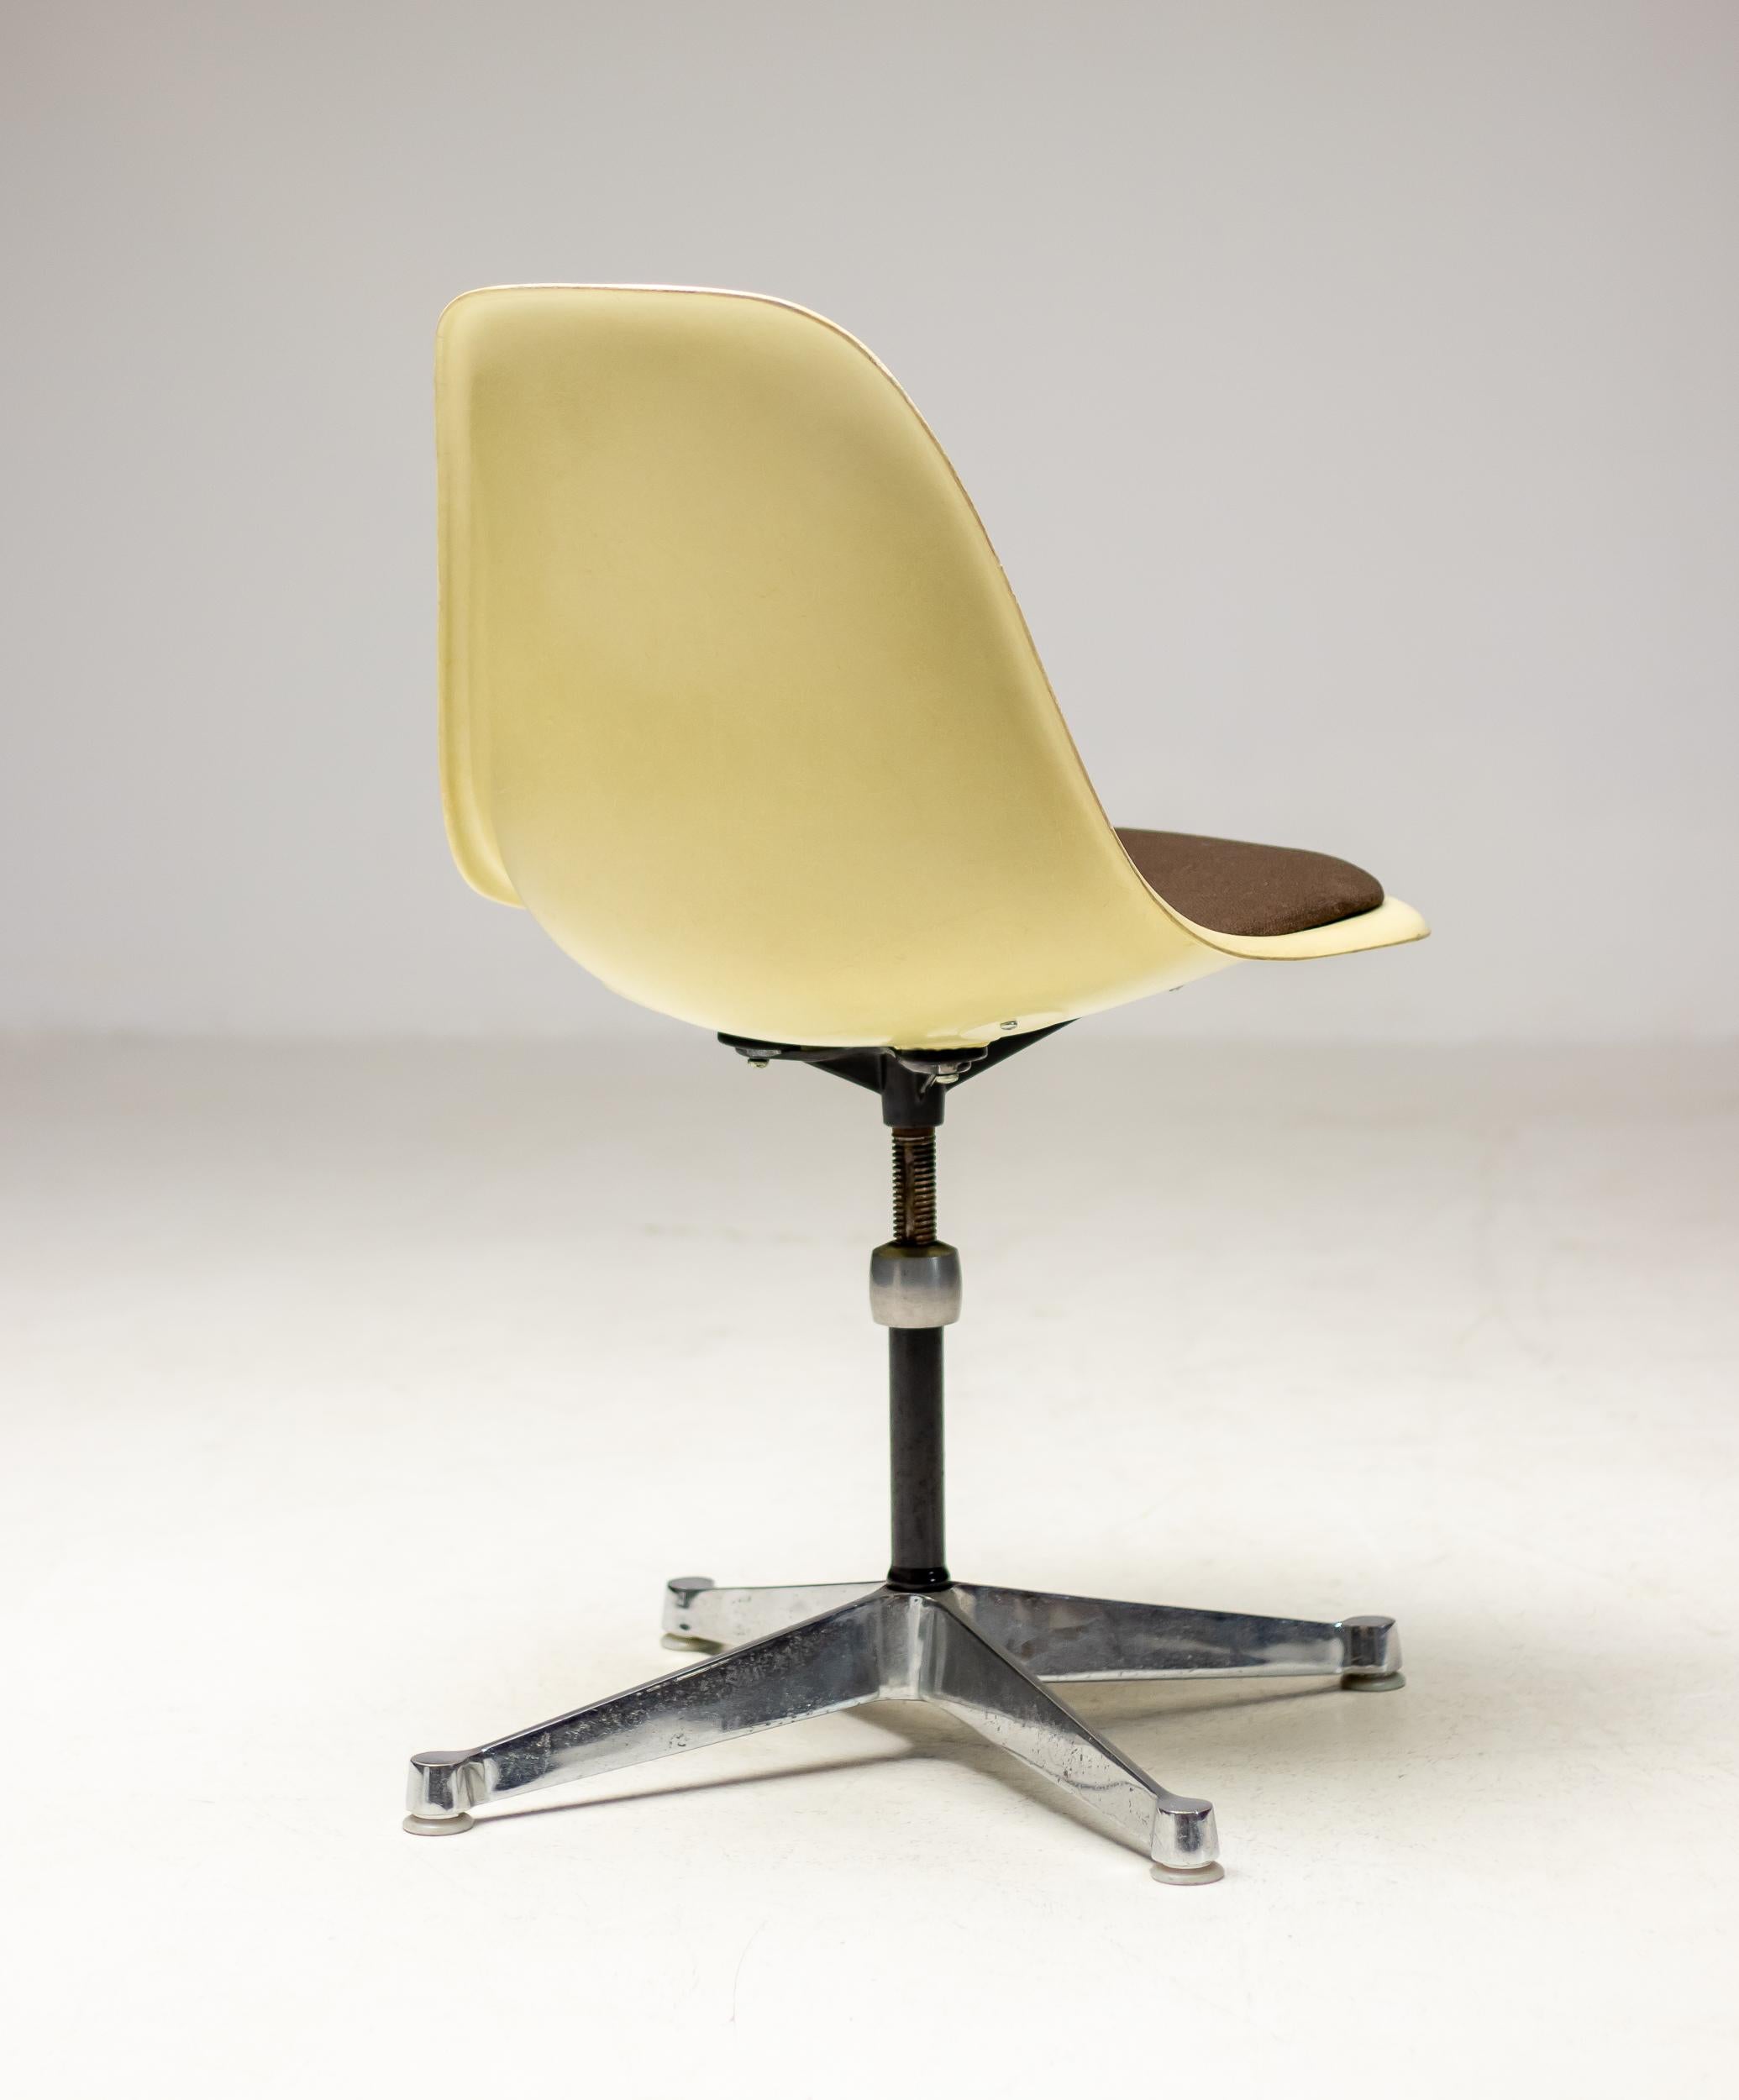 Chaise d'appoint pivotante en fibre de verre parcheminée conçue par Charles et Ray Eames pour Herman Miller.
Version originale désirable des années 1960 avec pad de siège en tissu marron, facile à retapisser quand on le souhaite.
Réglable en